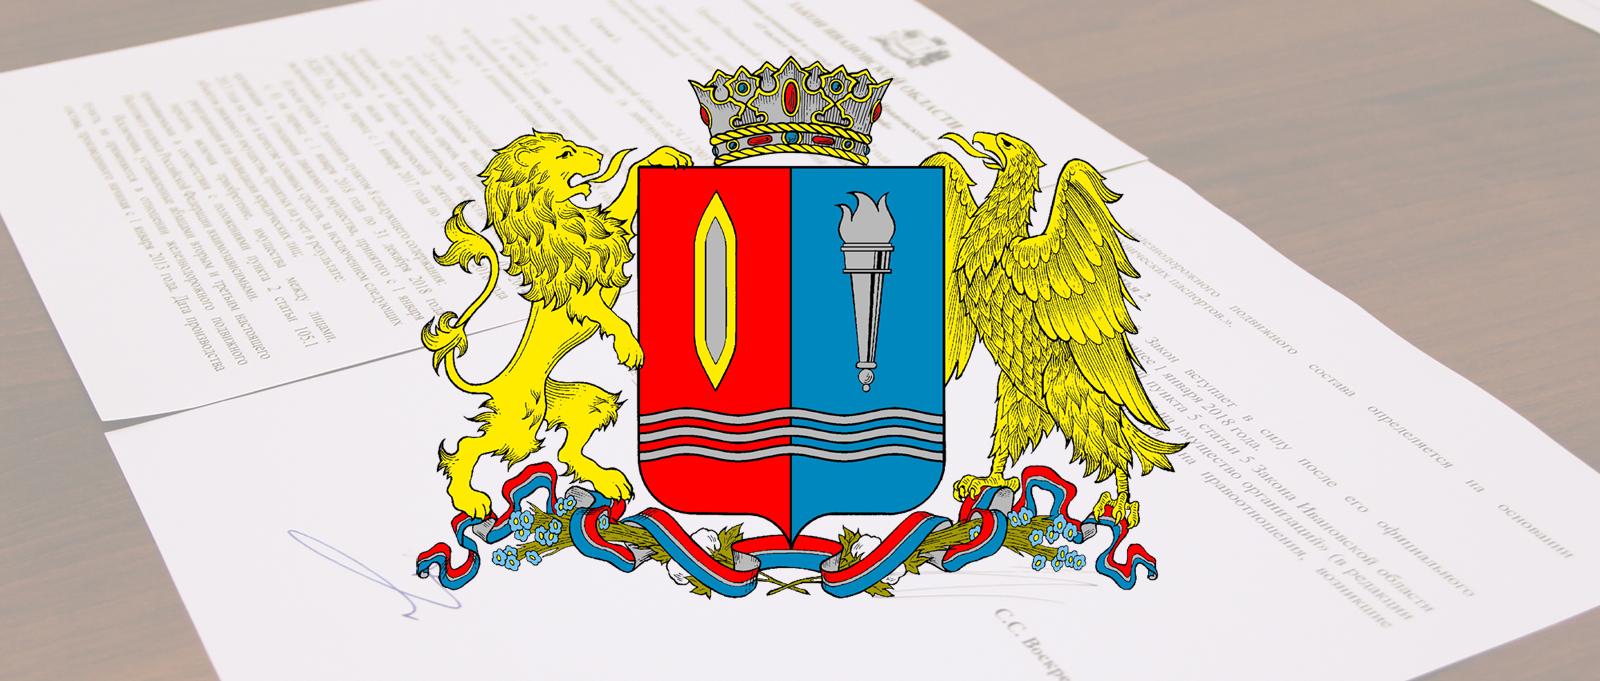 Региональная программа комплексной реабилитации инвалидов утверждена на заседании правительства Ивановской области